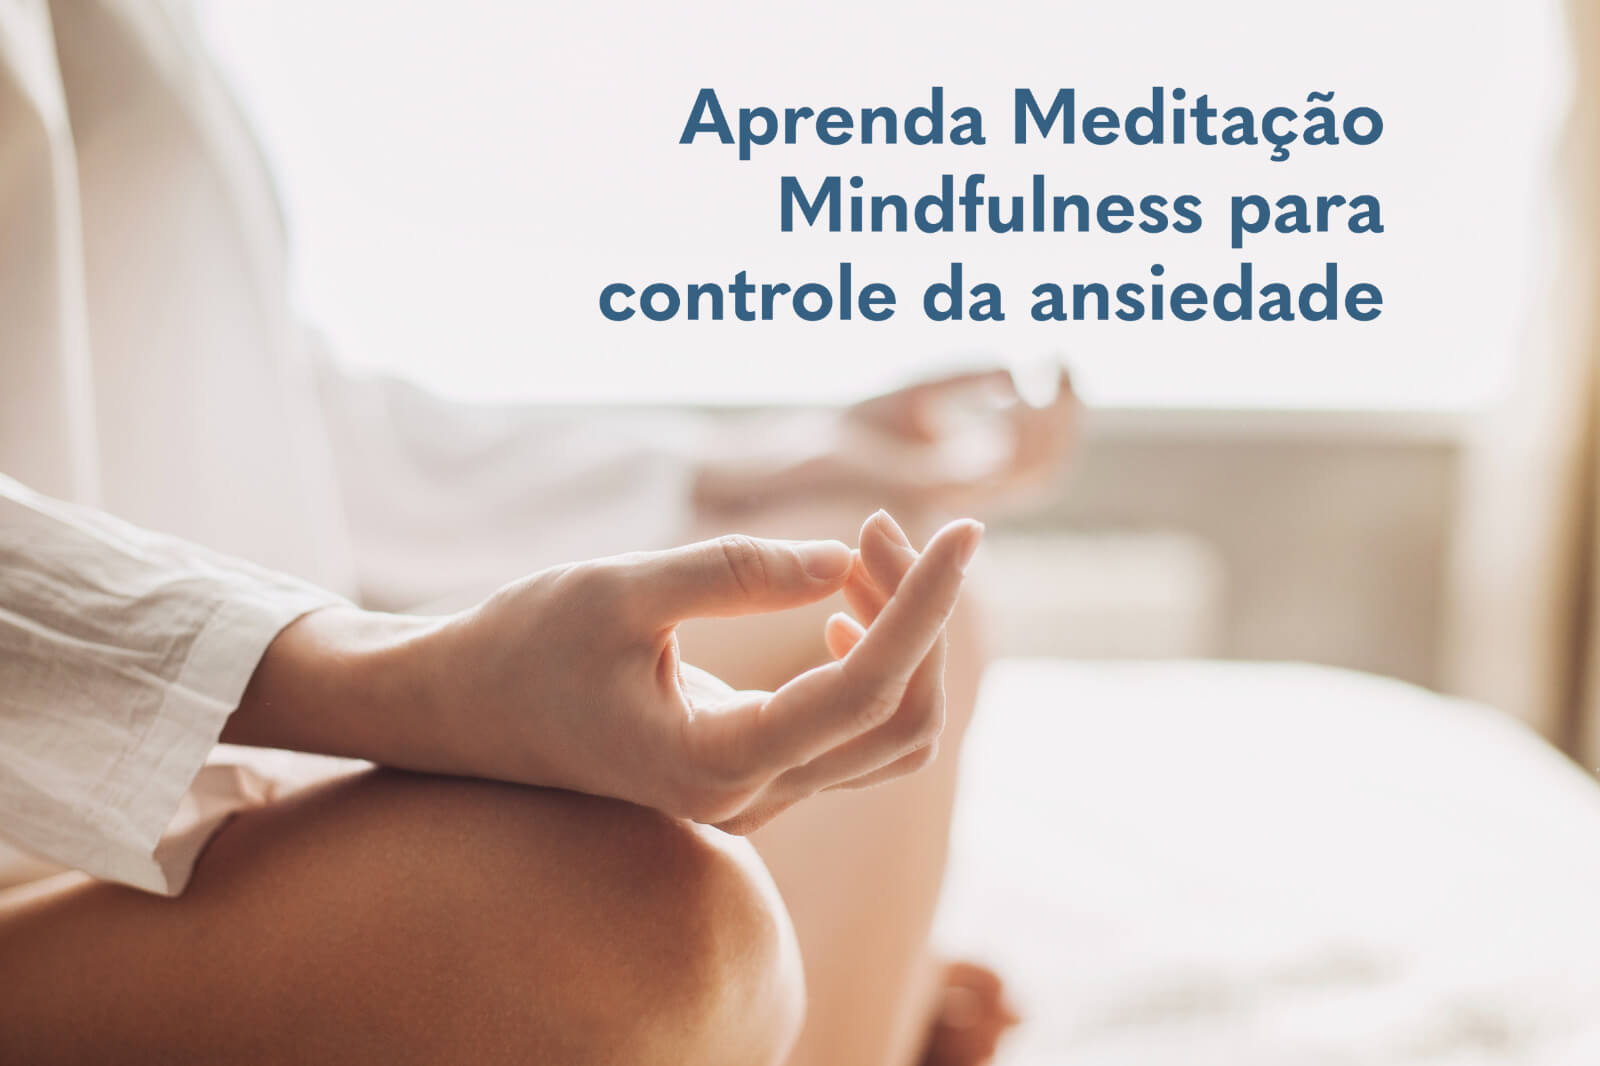 A meditação como técnica complementar no tratamento dos quadros ansiosos